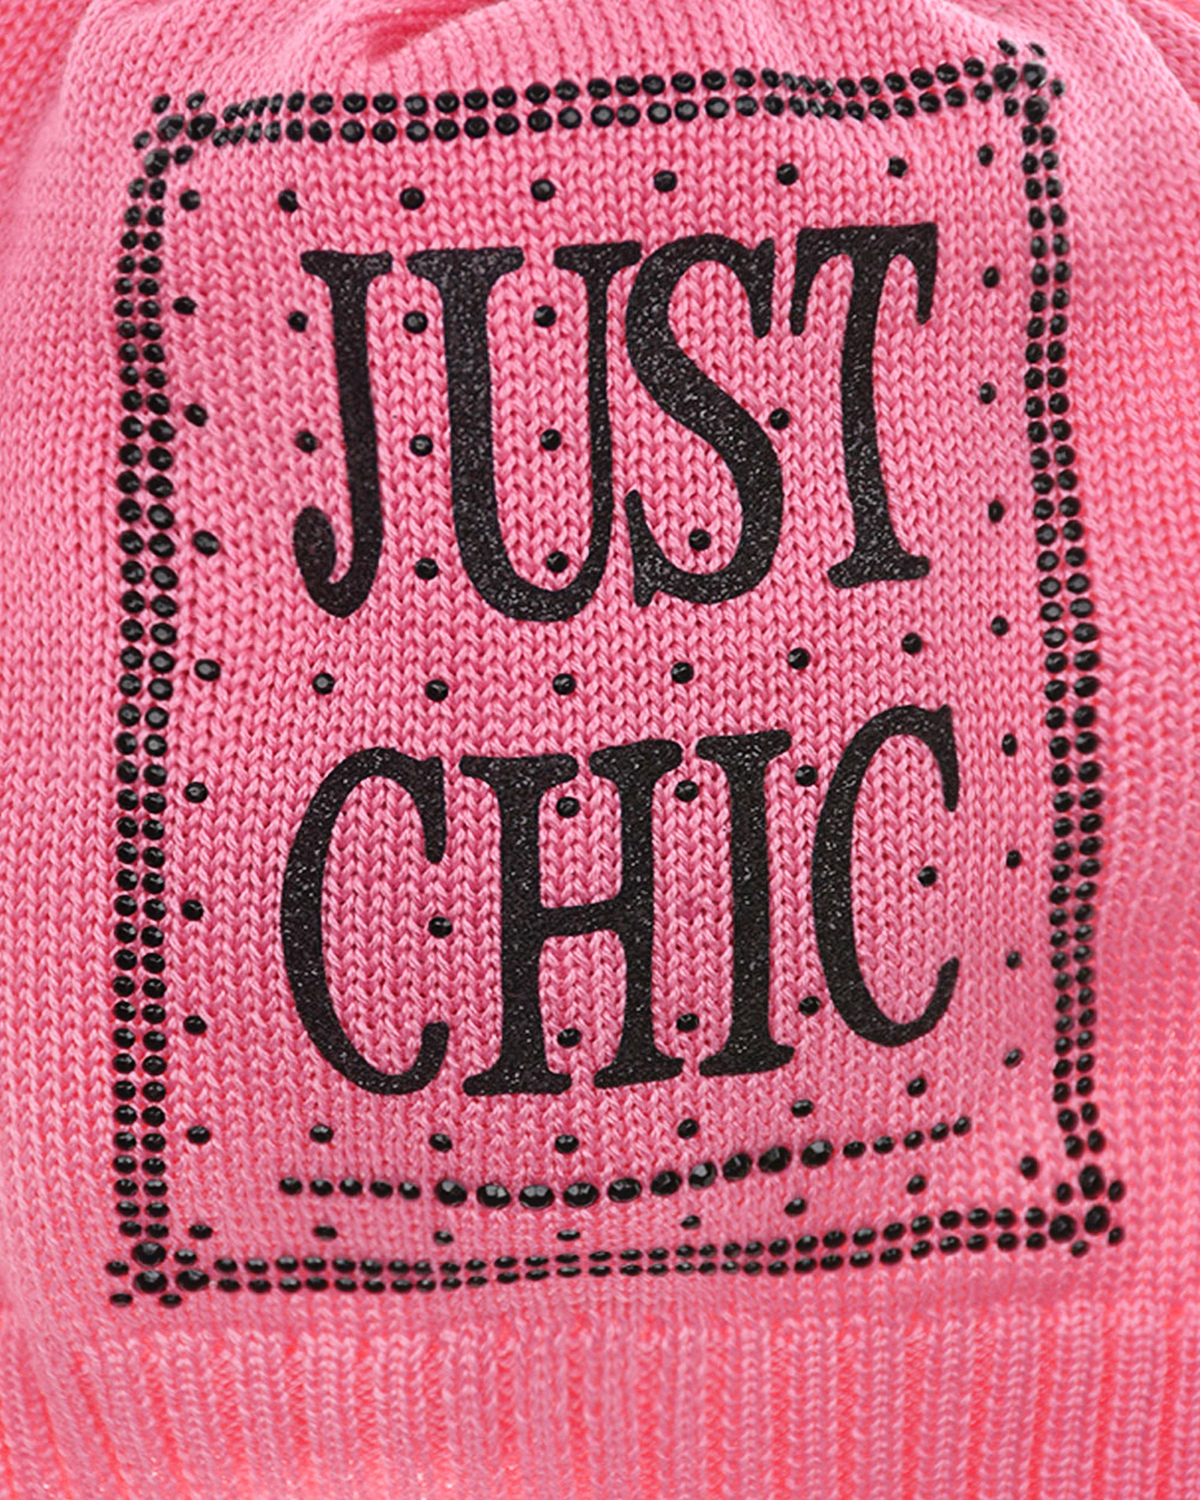 Розовая шапка с принтом "Just Chic" Catya детская, размер 53, цвет розовый - фото 3